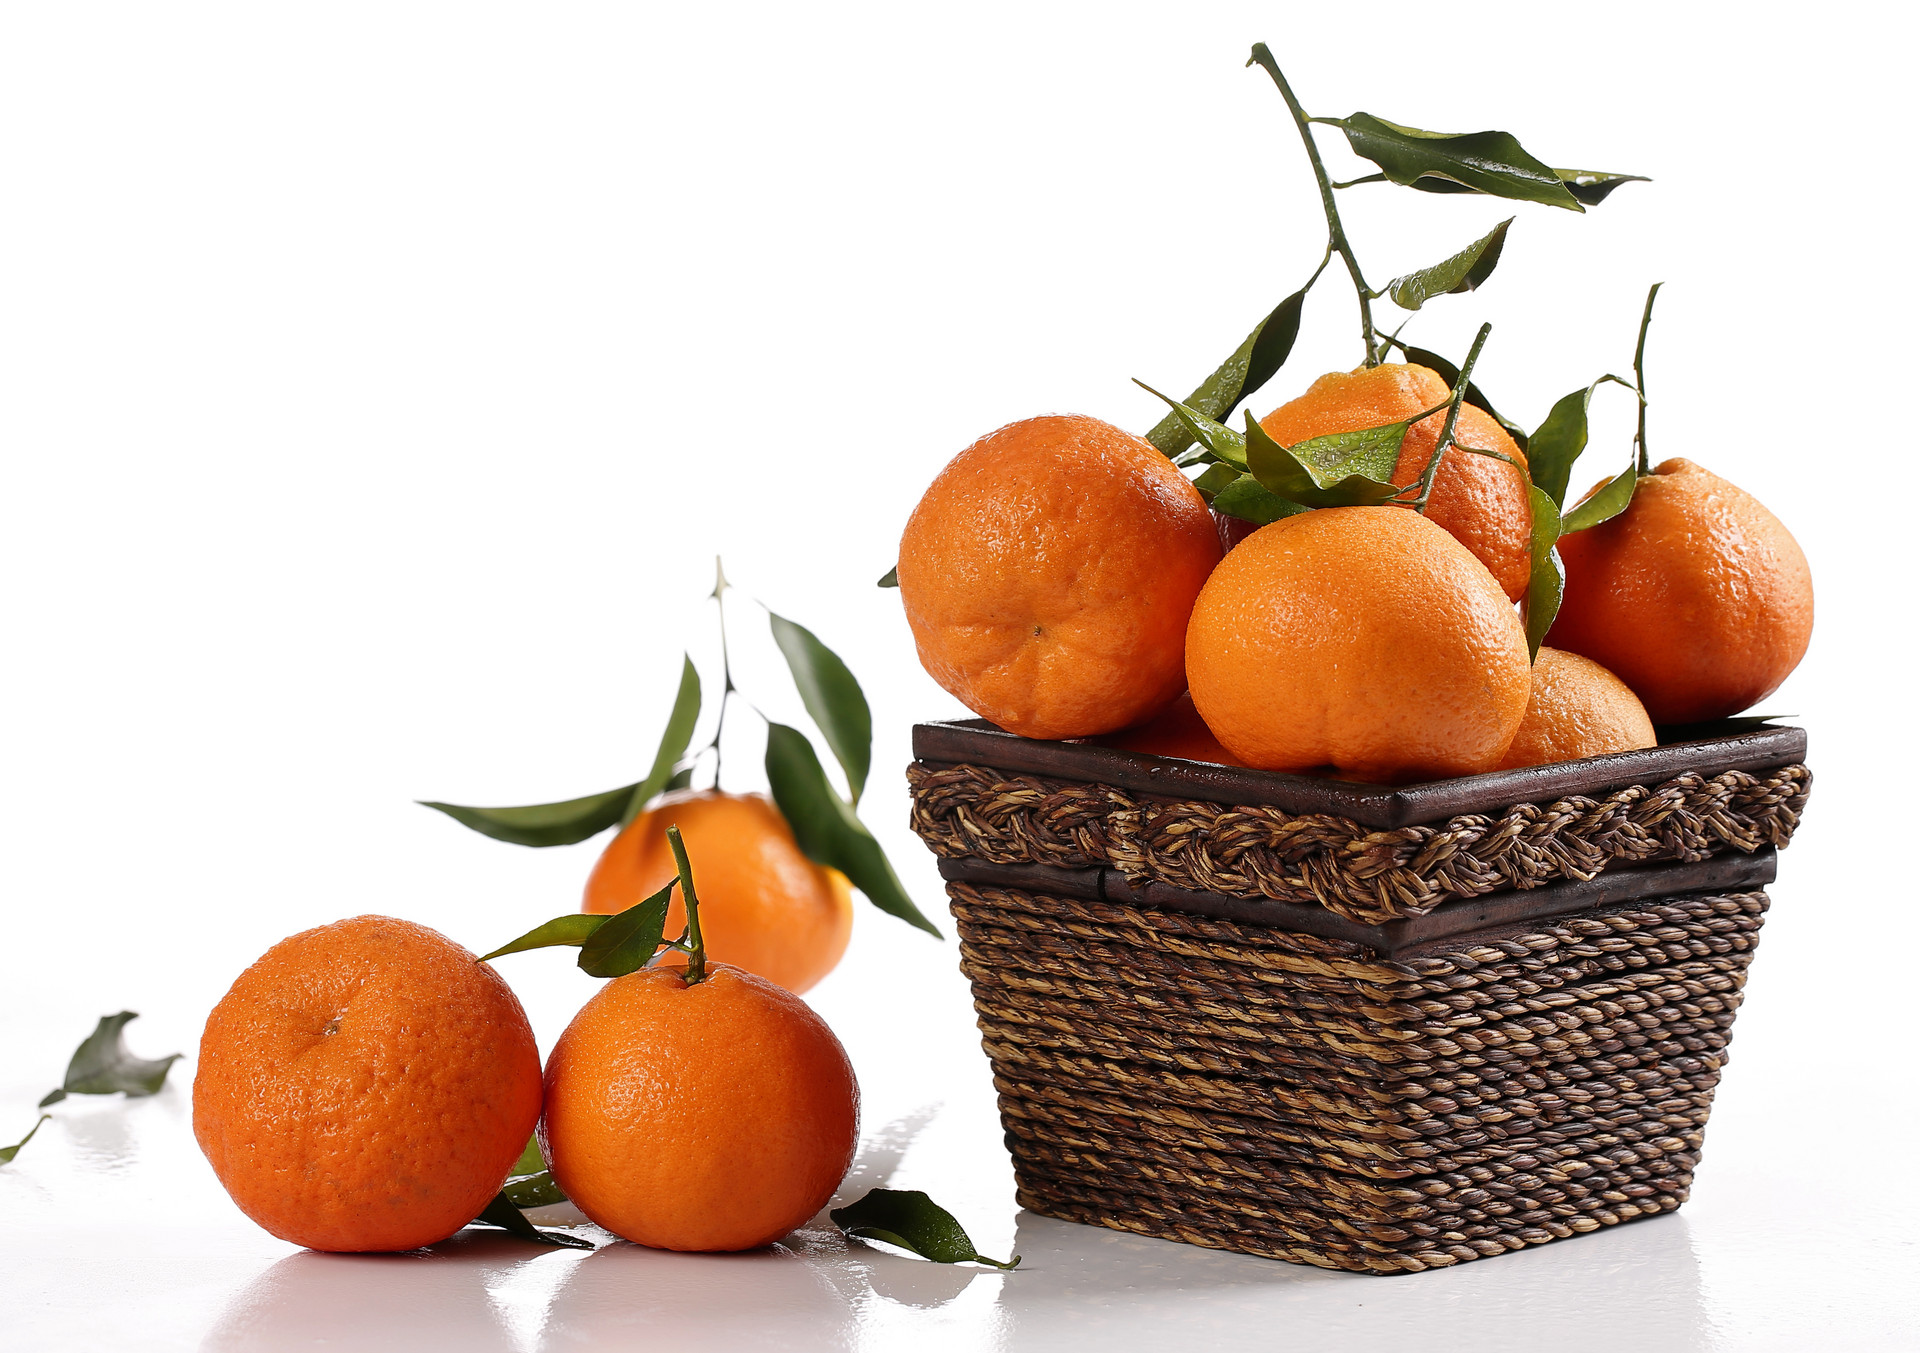 丑橘和普通橘子的区别 丑橘和一般的橘子是不一样的，虽然都是柑橘类水果，但是还是有很大的区别，不管是个头上还是性味上。那丑橘和普通橘子具体有哪些区别呢? 营养成分含量不同 丑橘的主要营养成分，它的维生素C 的含量是50mg/100g。 普通橘子的维生素C含量大约28mg/100g。 故此，丑橘的维生素C含量要远远大约其他同类水果，营养价值很高。 营养元素种类不同 丑橘和普通的橘子都含有丰富的维生素C。 但丑橘有很多普通橘子没有的微量元素，营养价值比普通橘子多。 性味不同 丑橘是凉性水果，多吃也不会上火的。 普通橘子是热性水果，多吃易上火。 吃丑橘有什么好处? 1、吃丑柑能减肥：不含脂肪也不含钠; 2、丑柑中的营养成分及其他植物化学成分有助于抗击癌症; 3、天天吃1个丑柑还能防止中风; 4、丑柑内含多种有效预防心脏病元素; 5、多吃丑柑能预防骨质疏松; 6、丑柑能帮助肠胃的消化，起到排毒养颜的功效! 7、丑柑随时都可以吃，天天都能吃，里面有大量的维生素C。